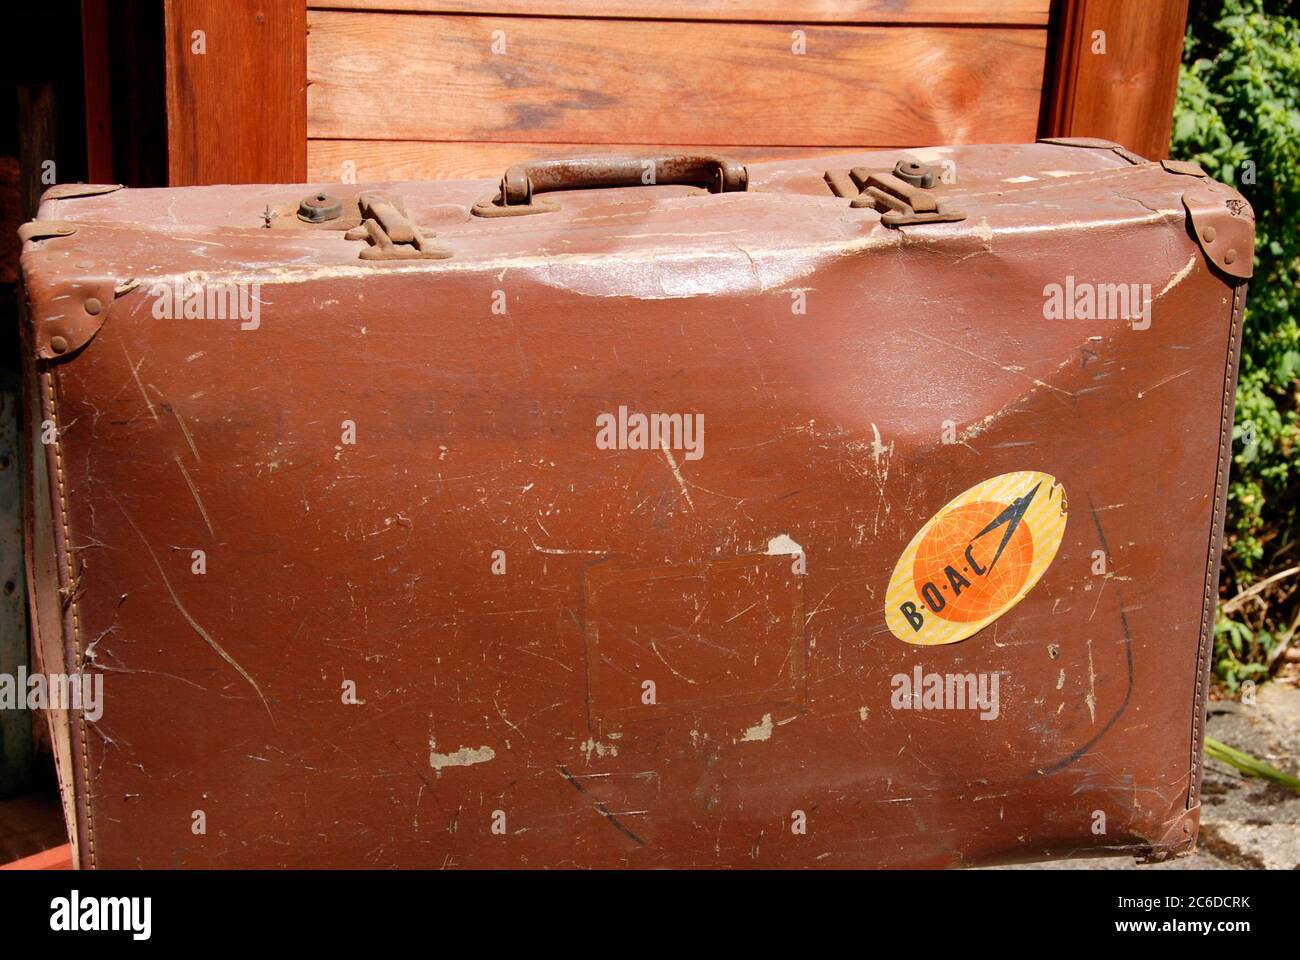 Eine alte, zerschlagene Suicase, die seit einiger Zeit in einem Nebengebäude gelagert wird und auf der noch ein B.O.A.C. Gepäcketikett aus den 1950er Jahren steht Stockfoto